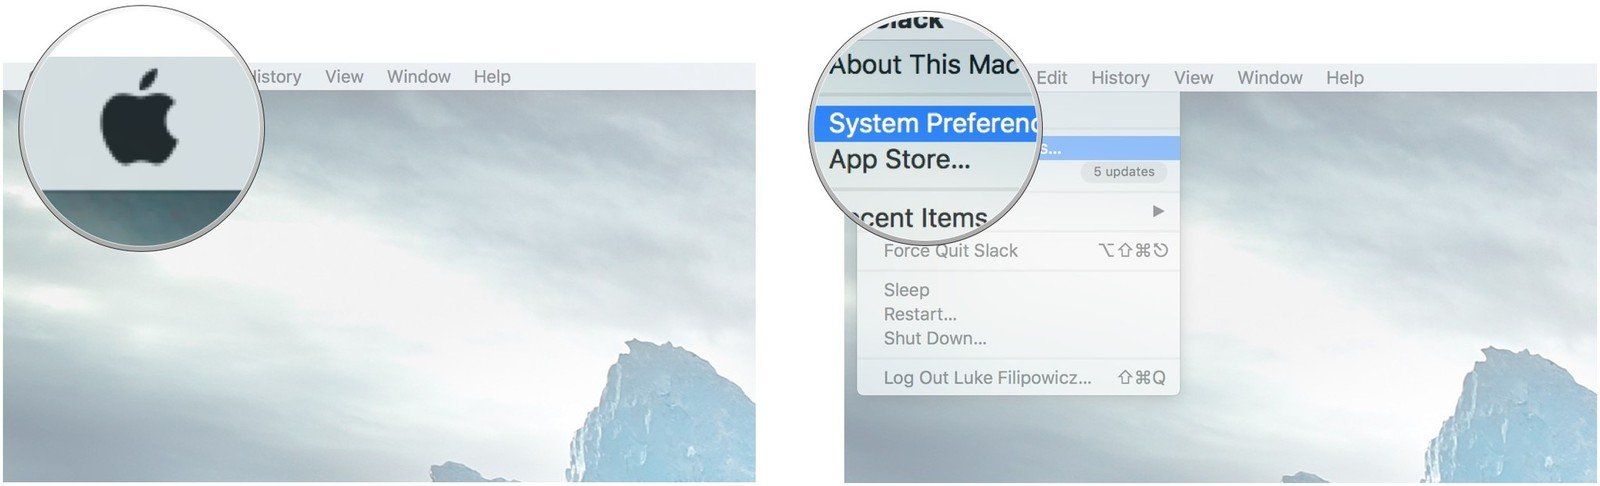 Нажмите на логотип Apple в левом верхнем углу экрана, а затем нажмите «Системные настройки».